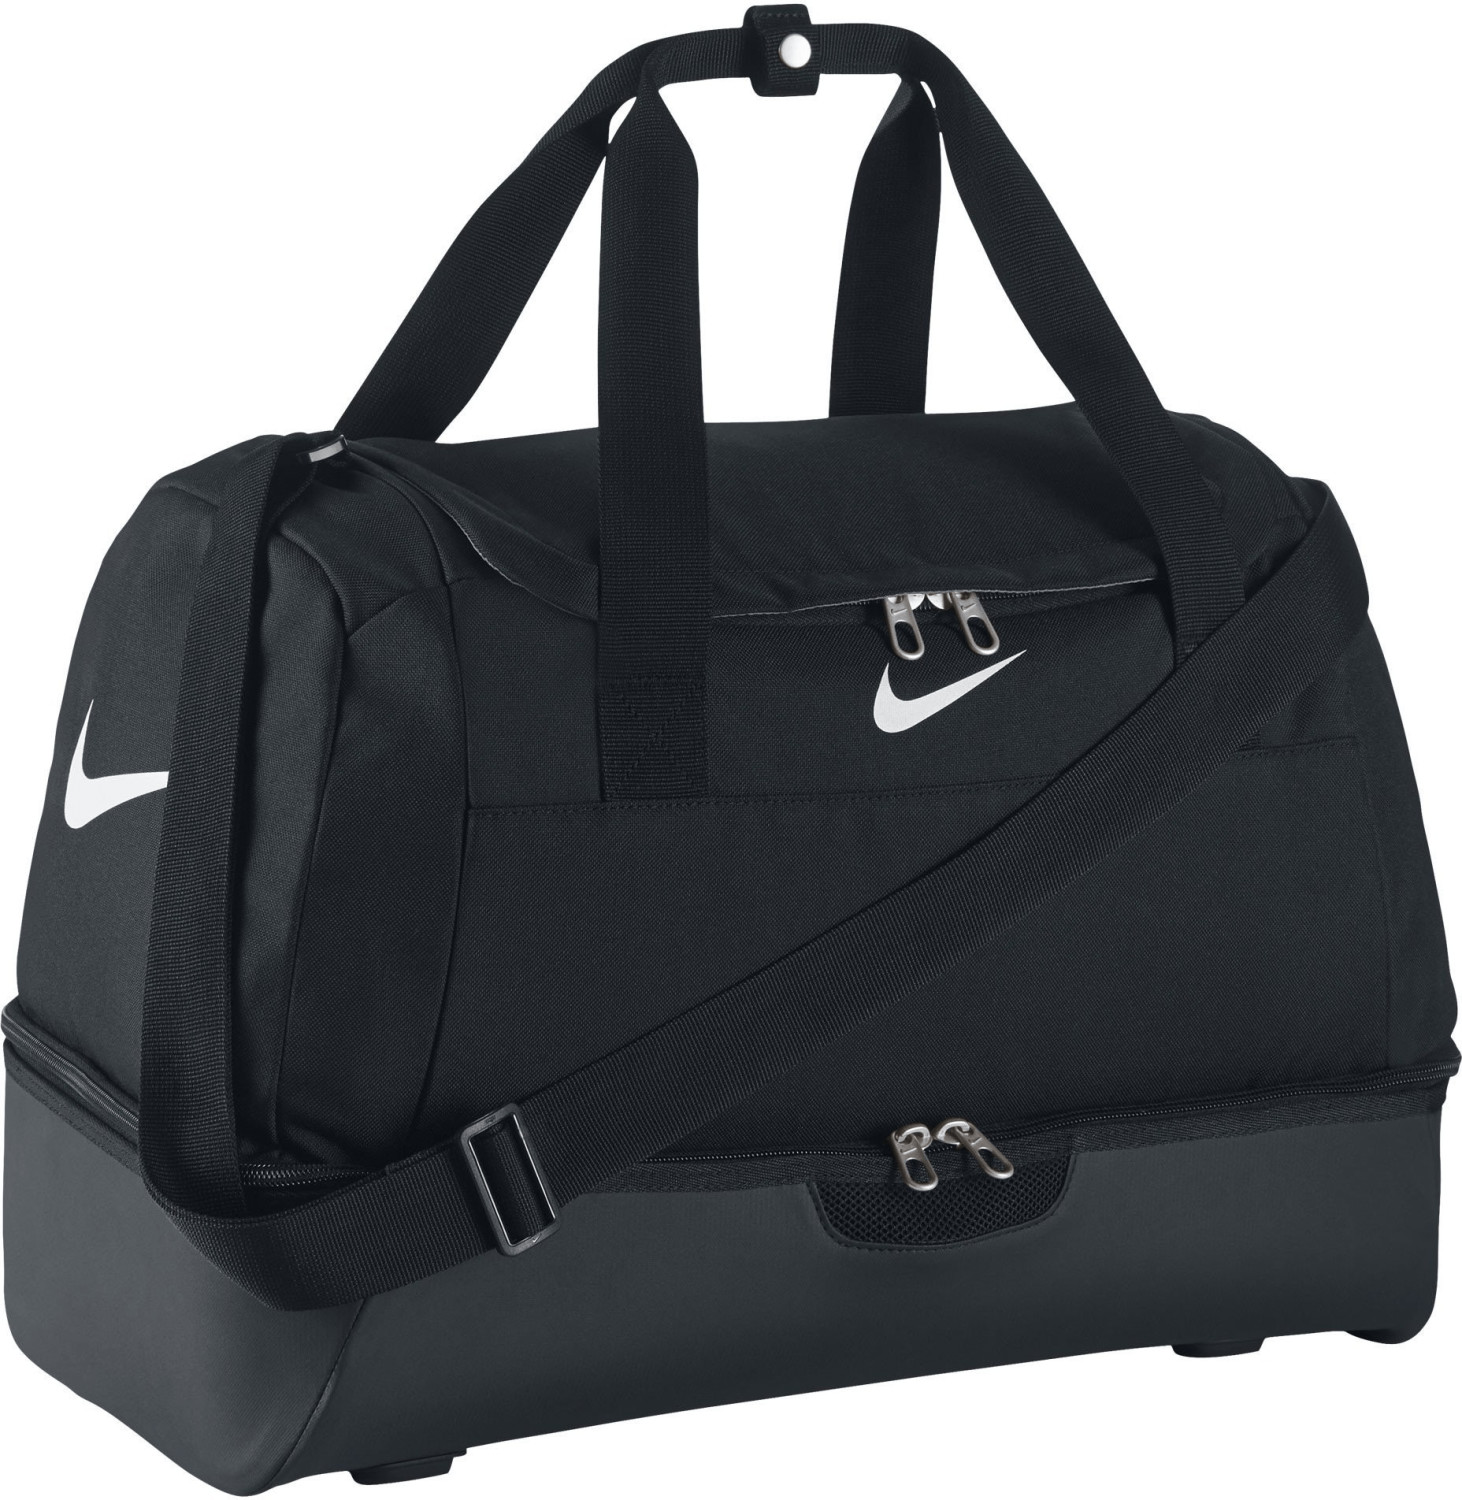 Nike Swoosh Hardcase Medium black/white (BA5196)